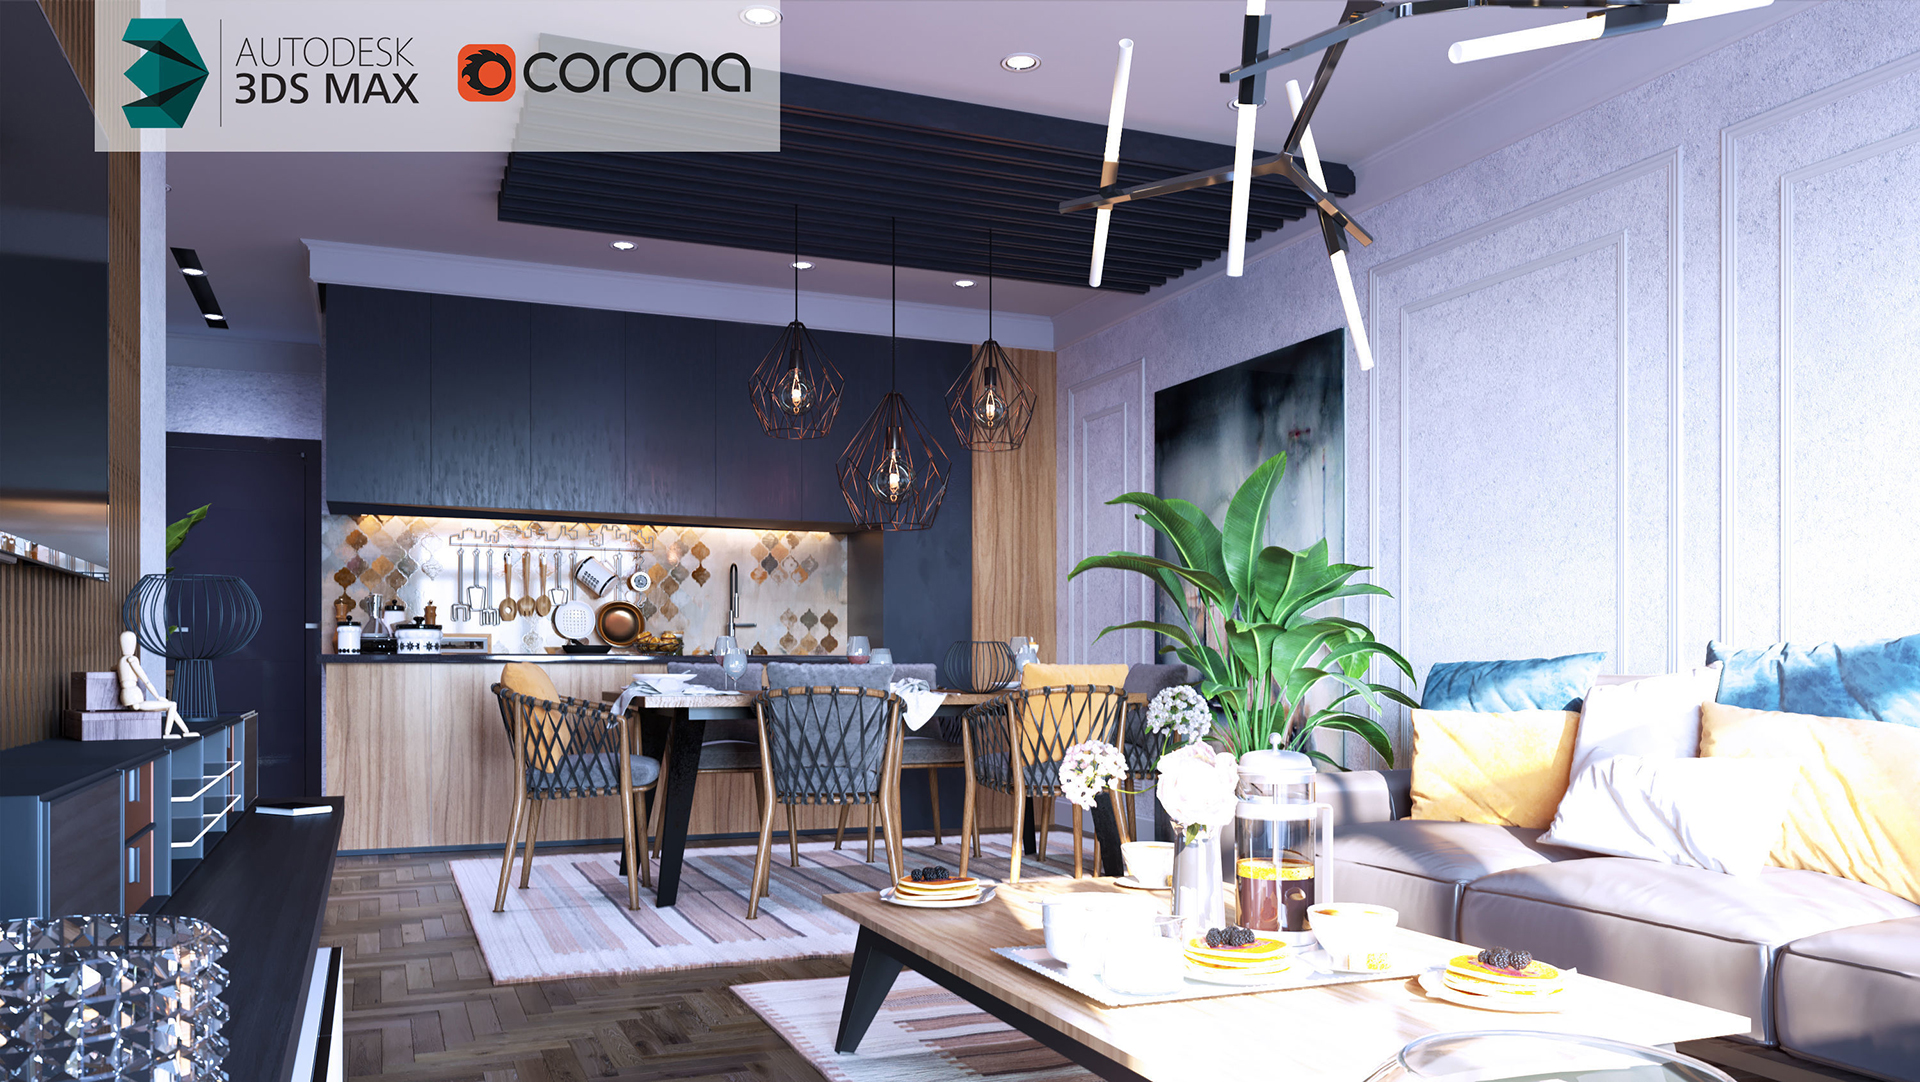 Corona Renderer for 3ds Max - Download - Hướng dẫn cài đặt nhanh nhất